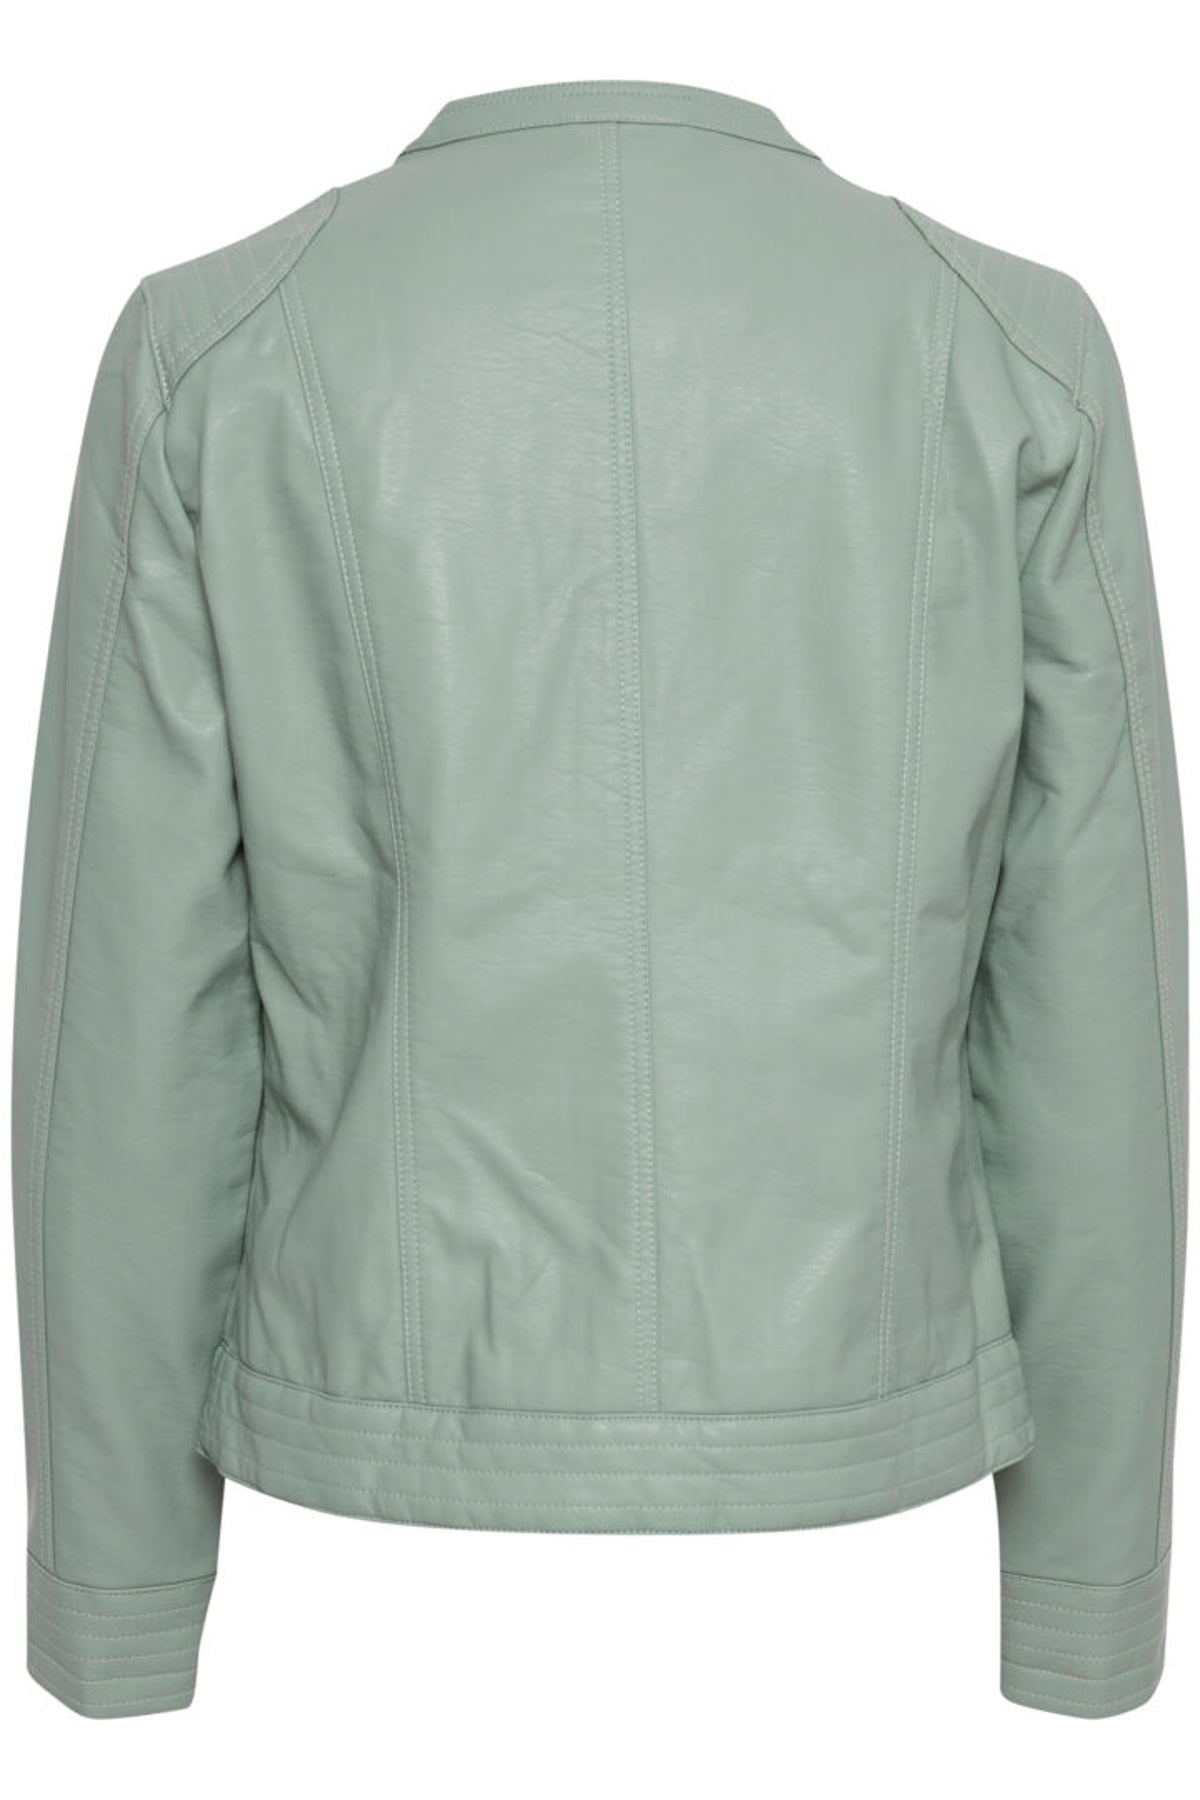 Acom jacket, sea green